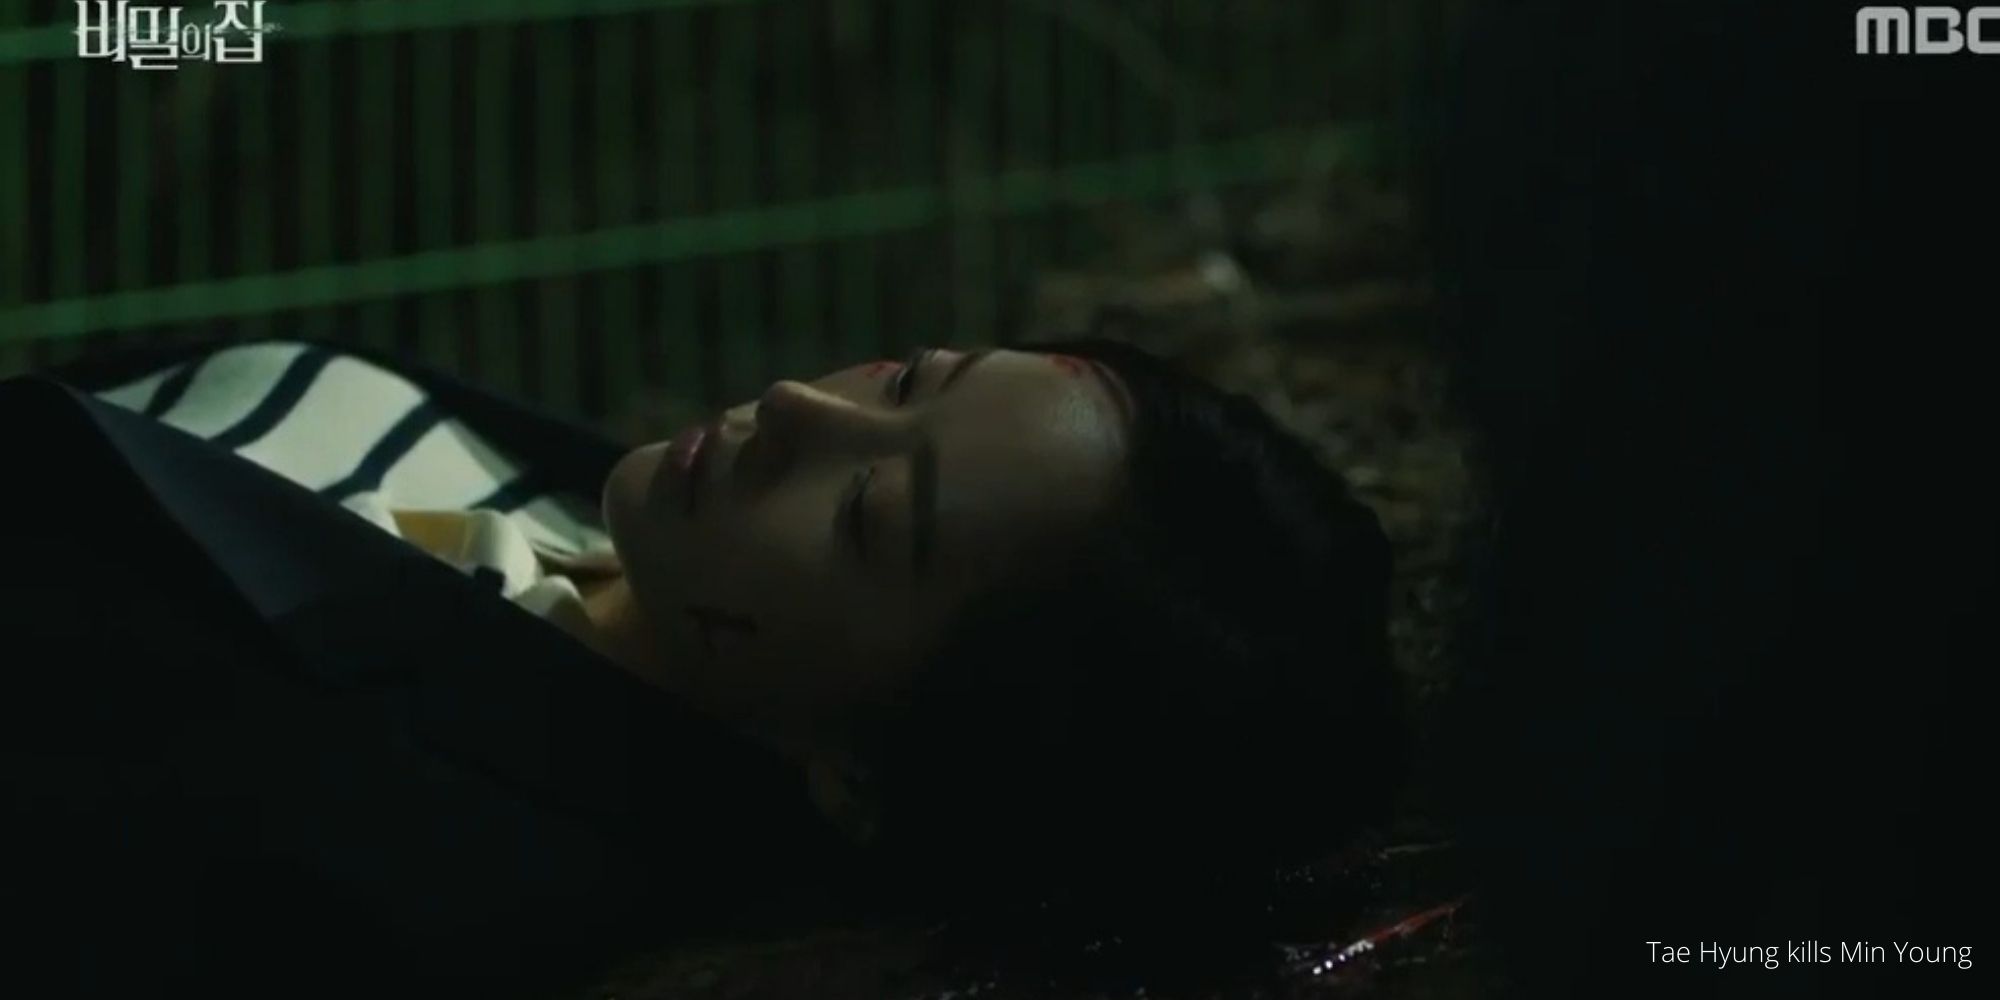 Tae Hyung kills Min Young